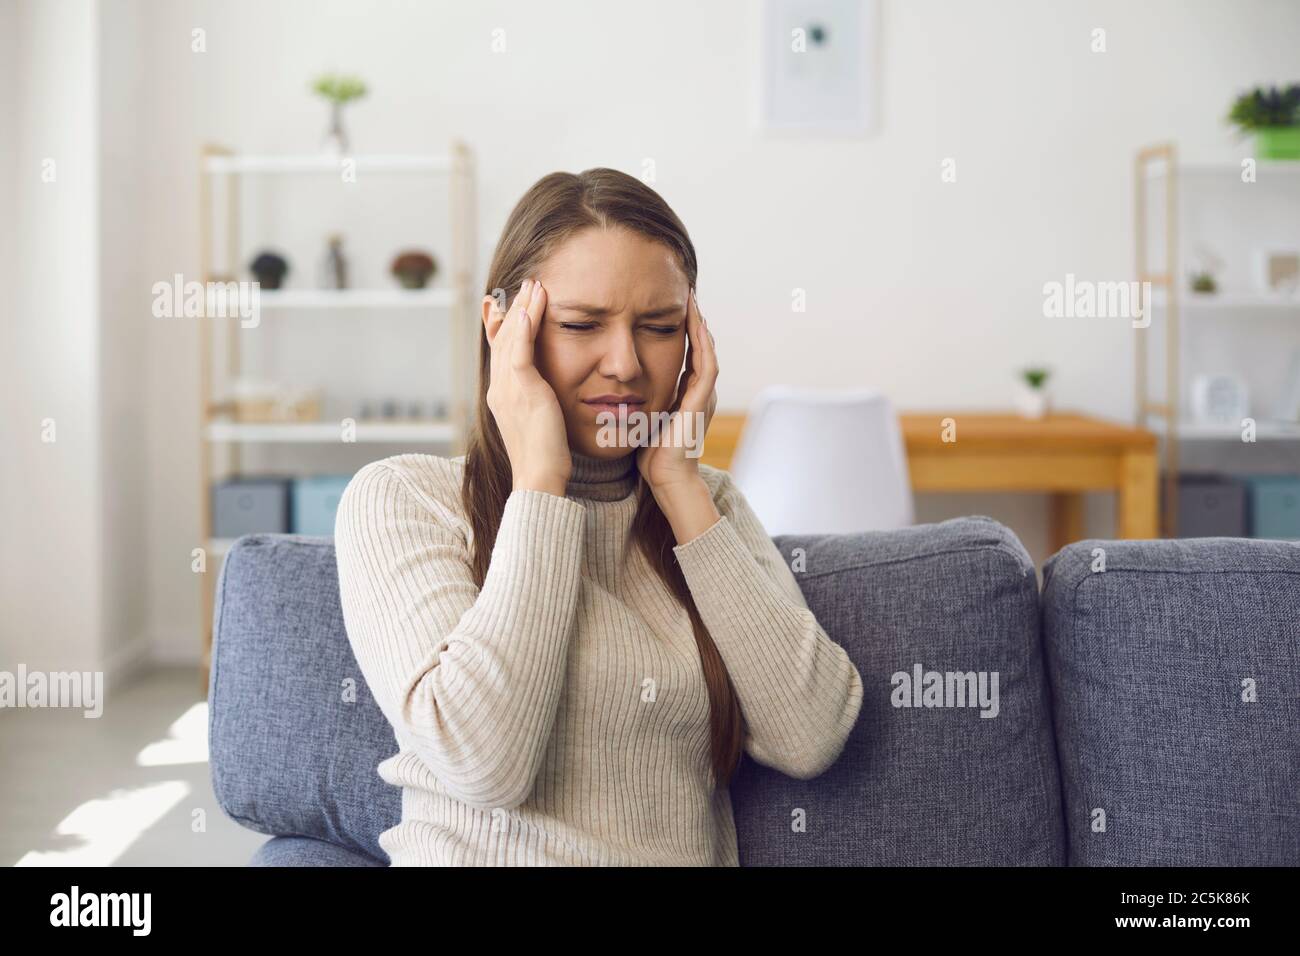 Maux de tête. Migraine. Une femme blonde a un mal de tête tout en étant assise sur un canapé dans une chambre. Banque D'Images